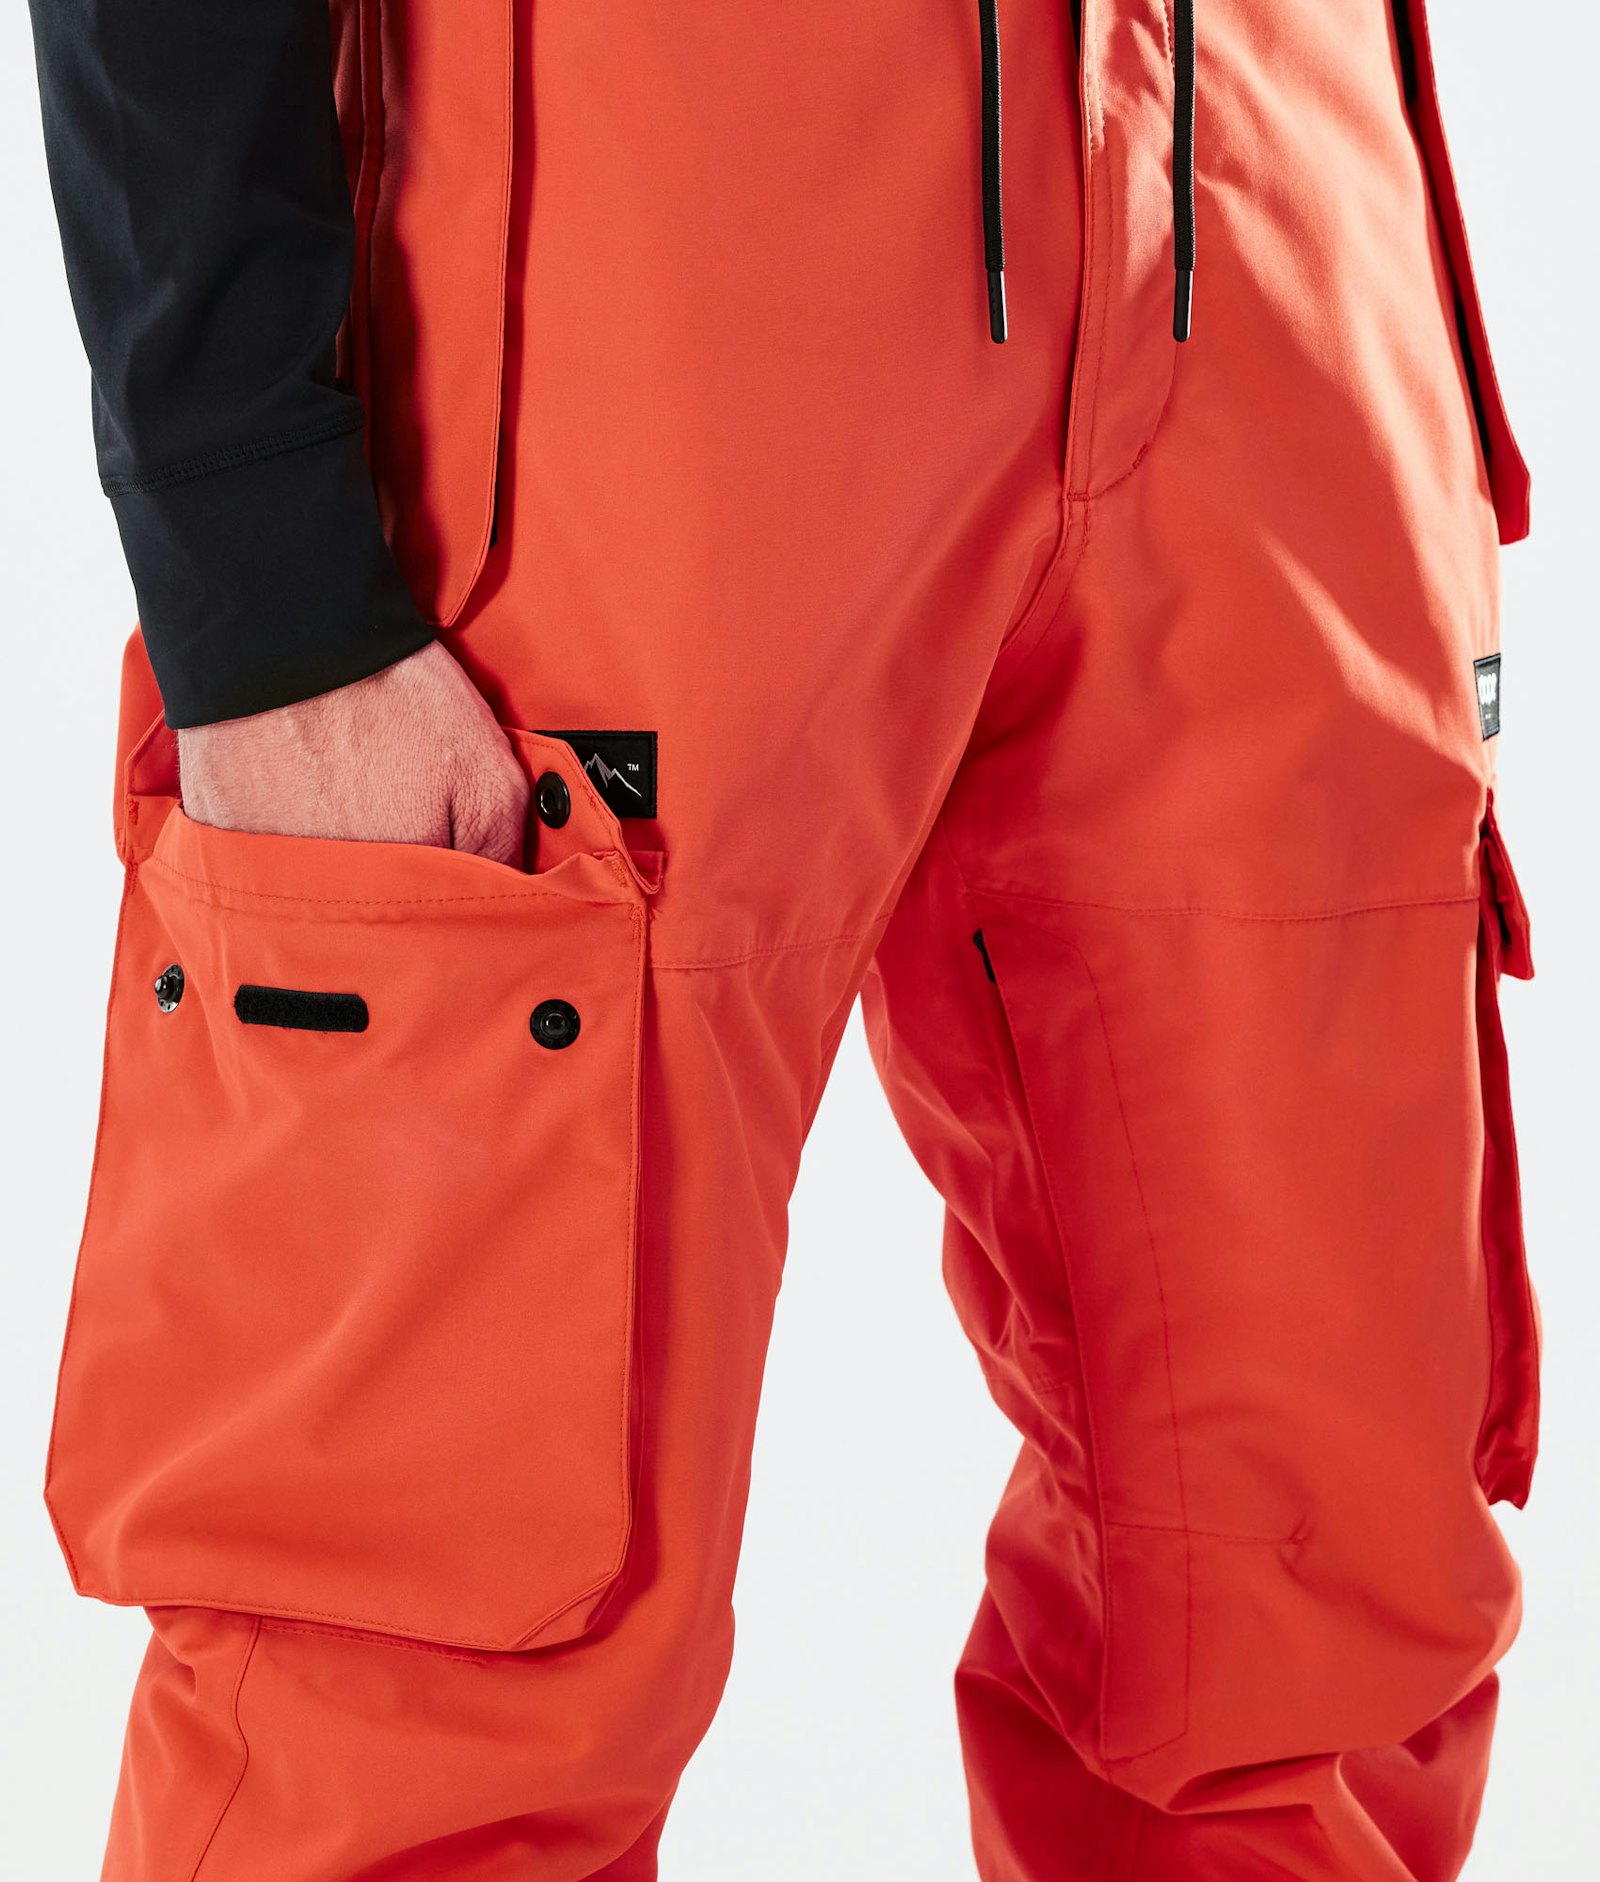 Iconic 2021 Pantaloni Sci Uomo Orange